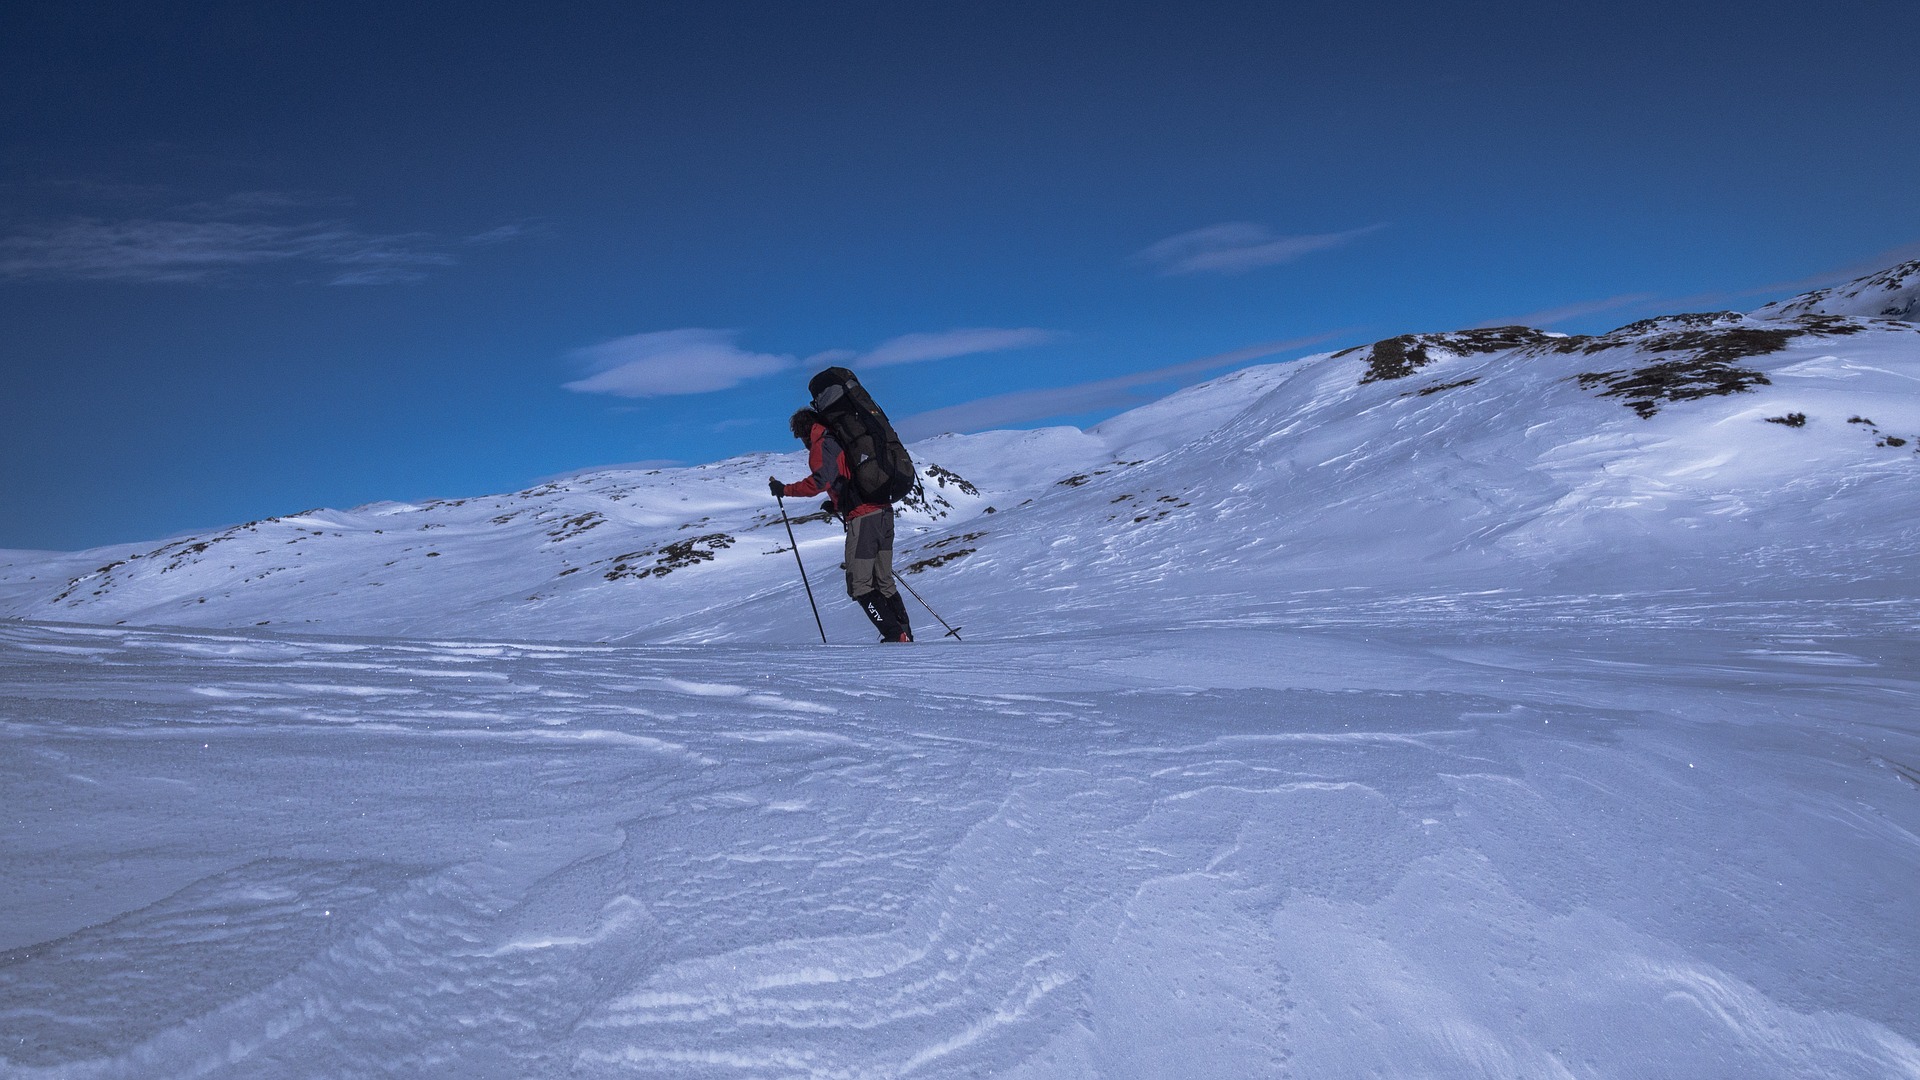 Sorprendido por el mal tiempo, el esquiador, de unos 50 años, se halló en dificultades en recorridos. (Foto Prensa Libre: Pixabay)